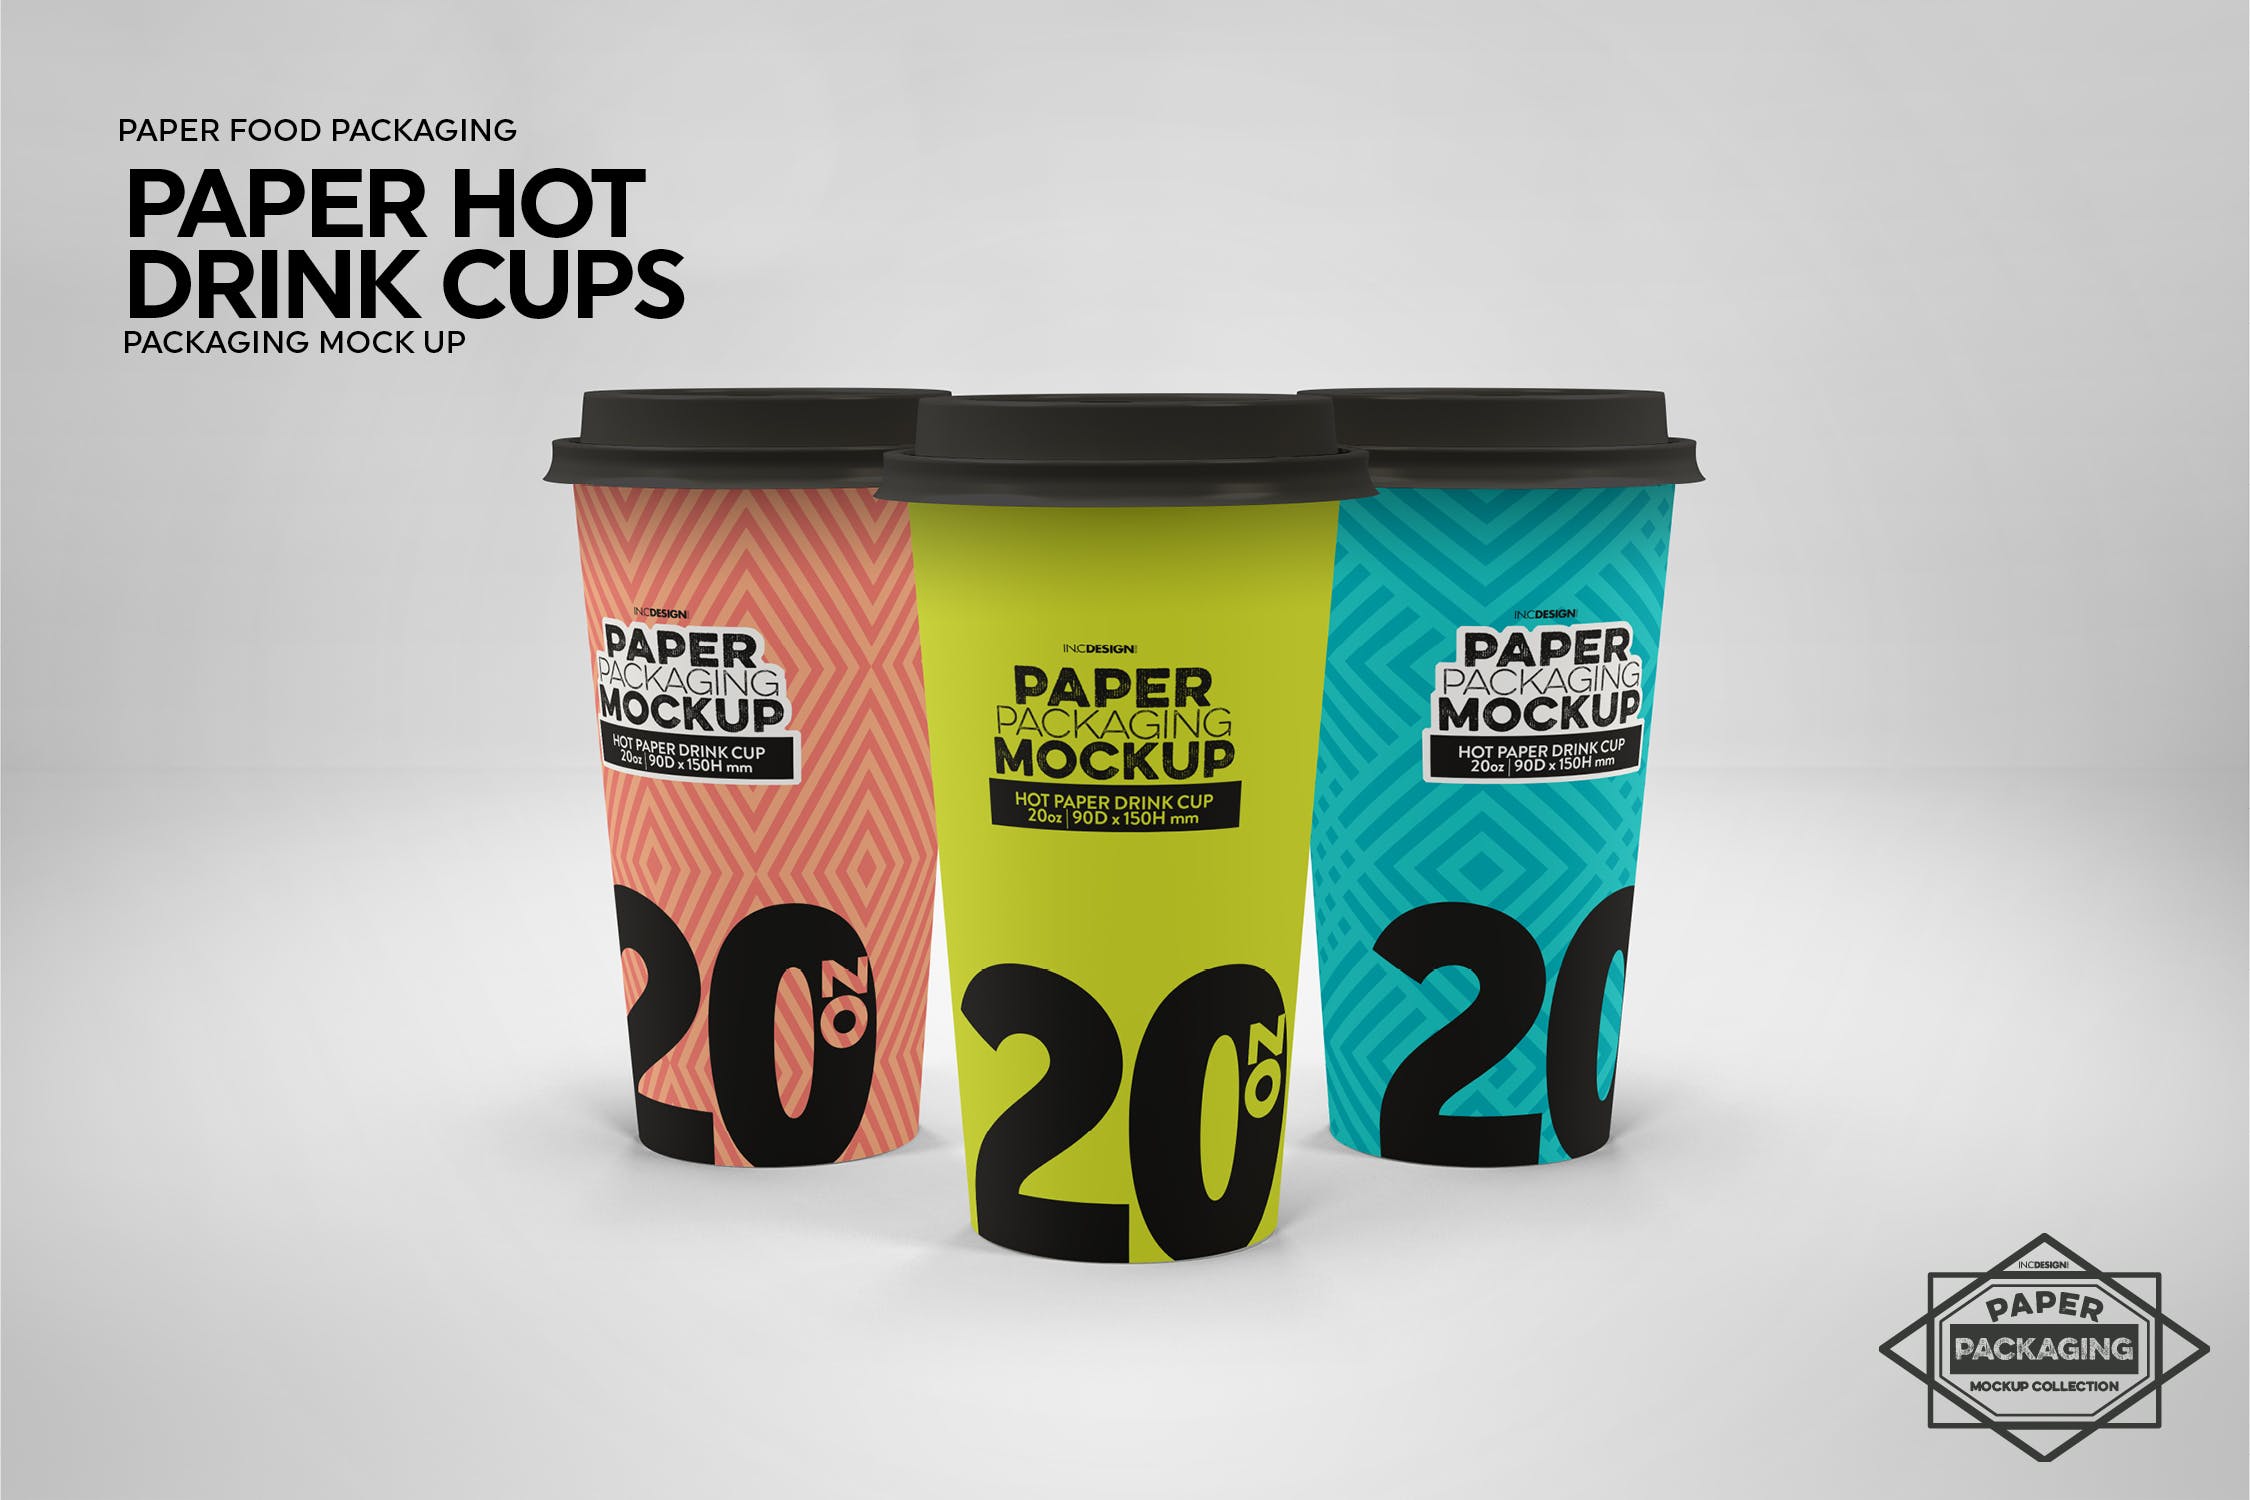 热饮一次性纸杯外观设计非凡图库精选 Paper Hot Drink Cups Packaging Mockup插图(6)